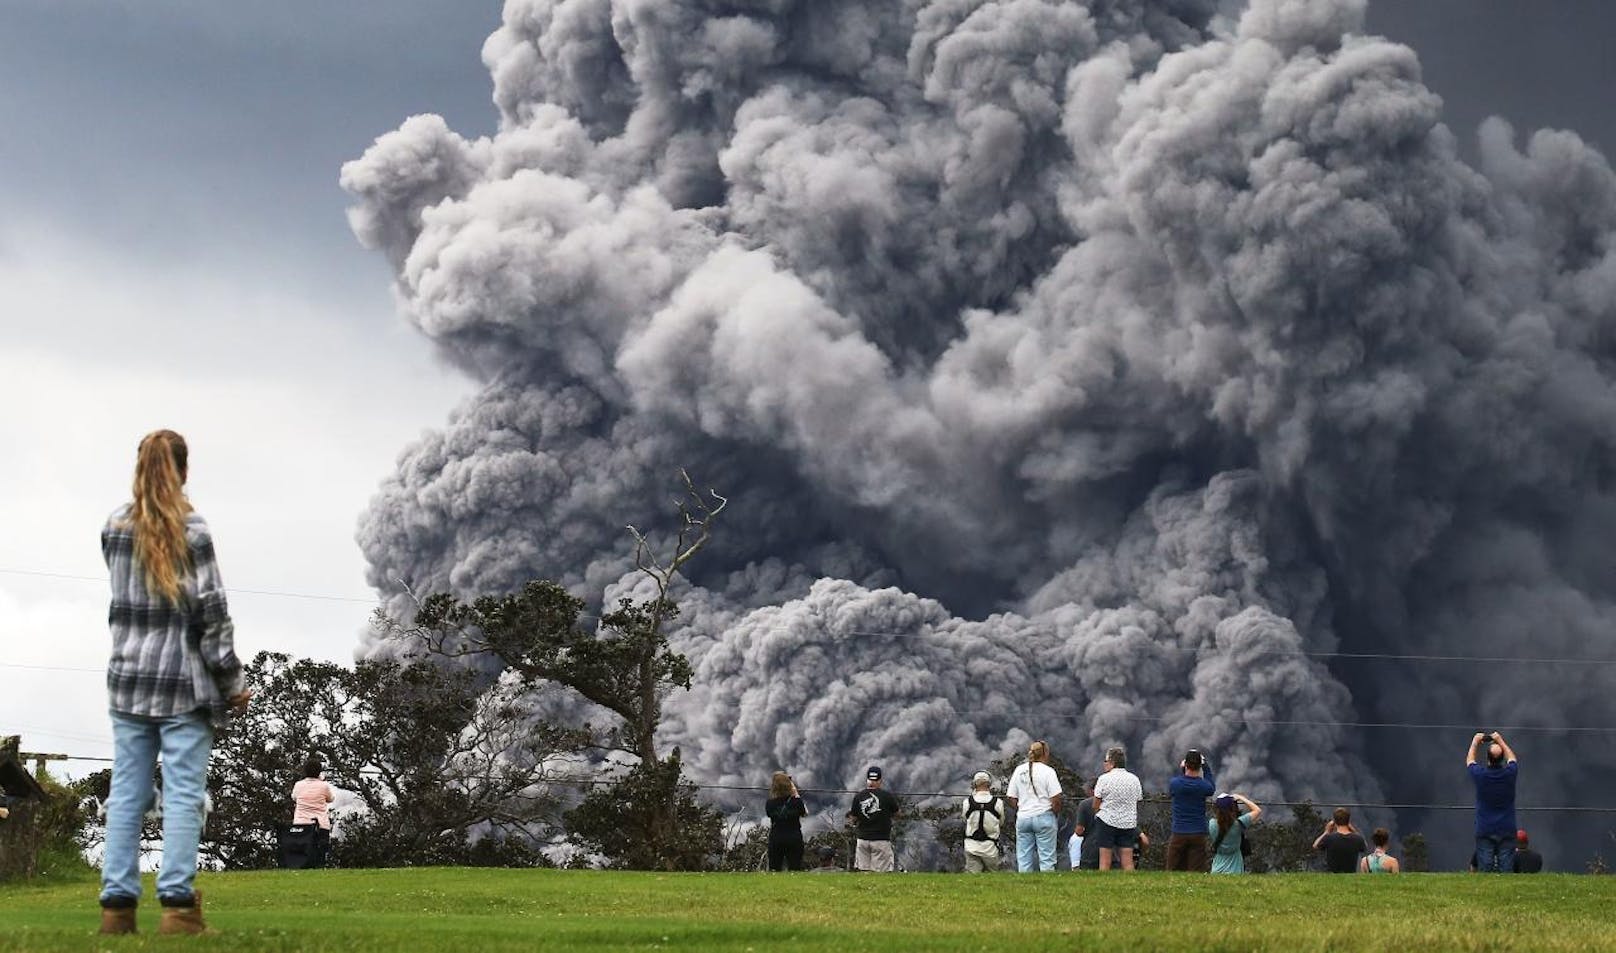 Wegen einer riesigen Aschewolke des Vulkans Kilauea haben die Behörden von Hawaii für die Umgebung erneut Alarmstufe rot ausgerufen.